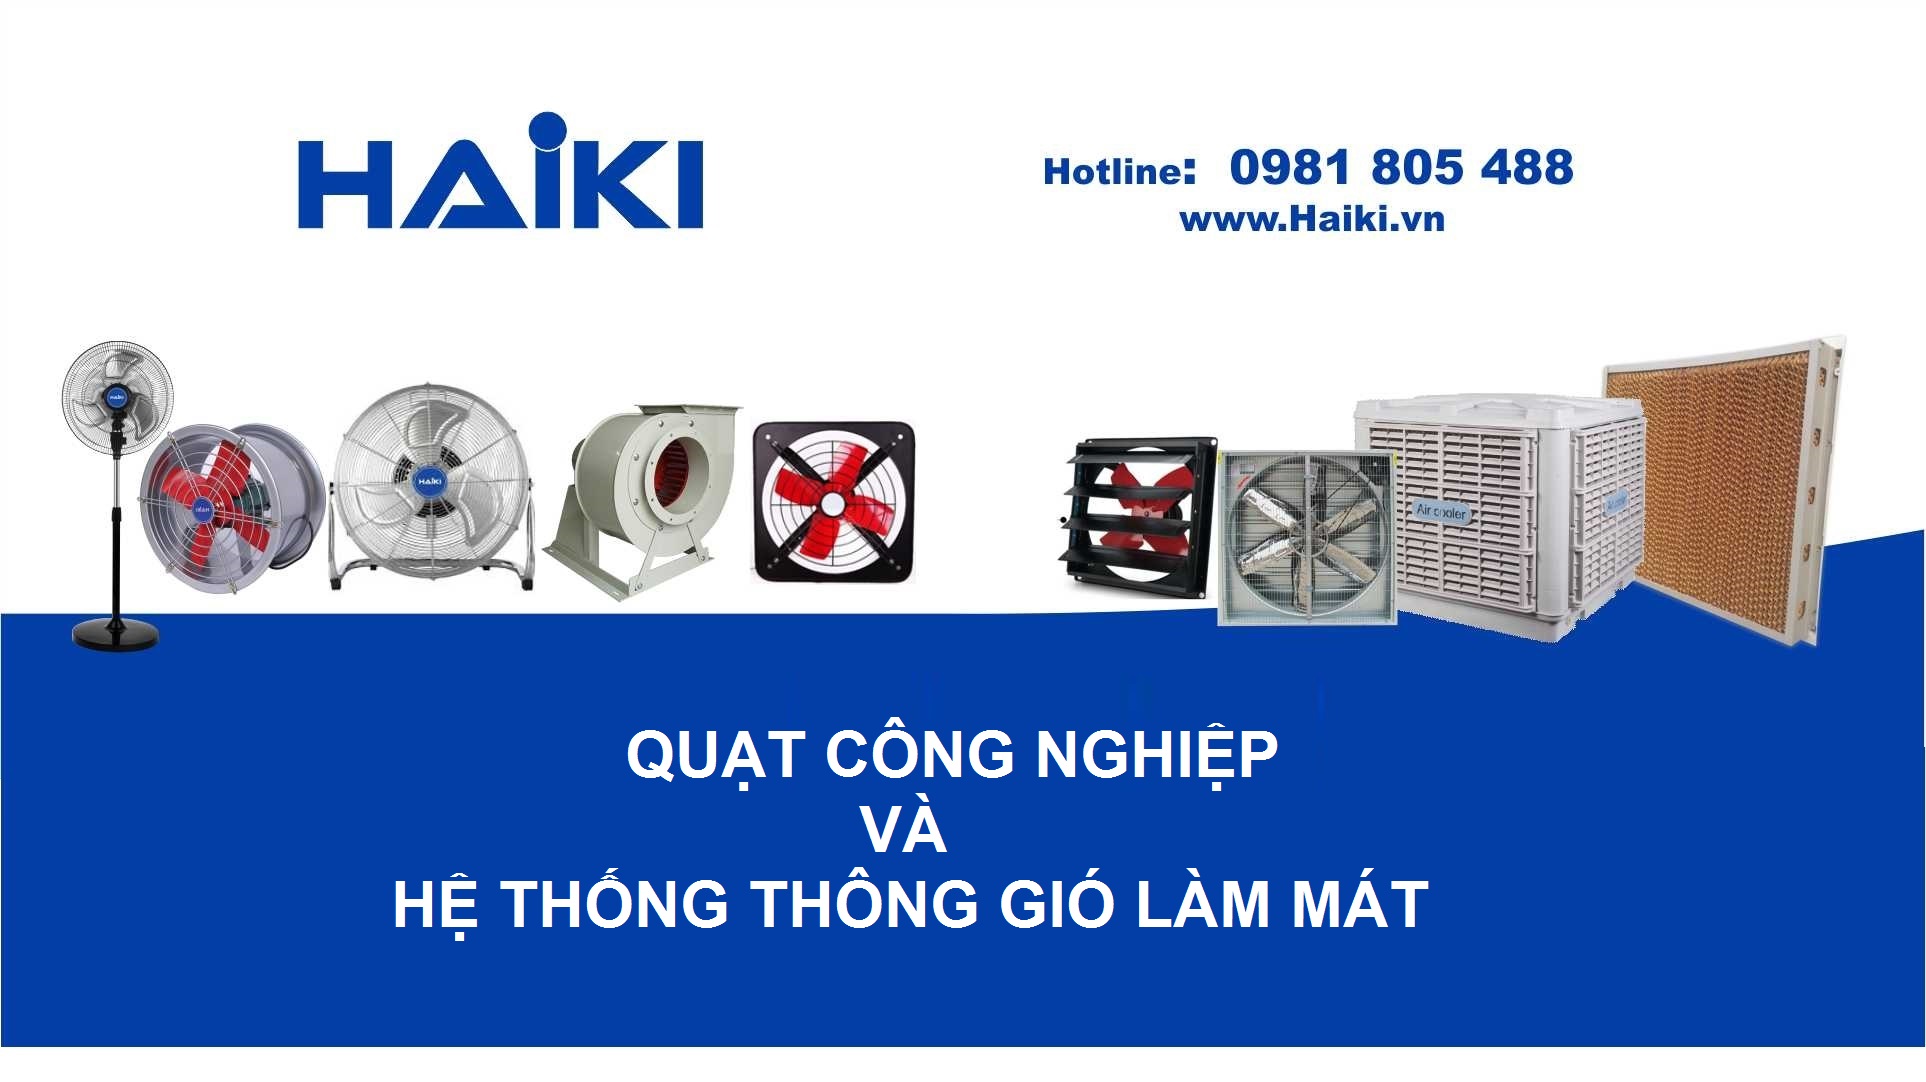 Quạt công nghiệp tại Bắc Ninh - Hotline 0981 805 488